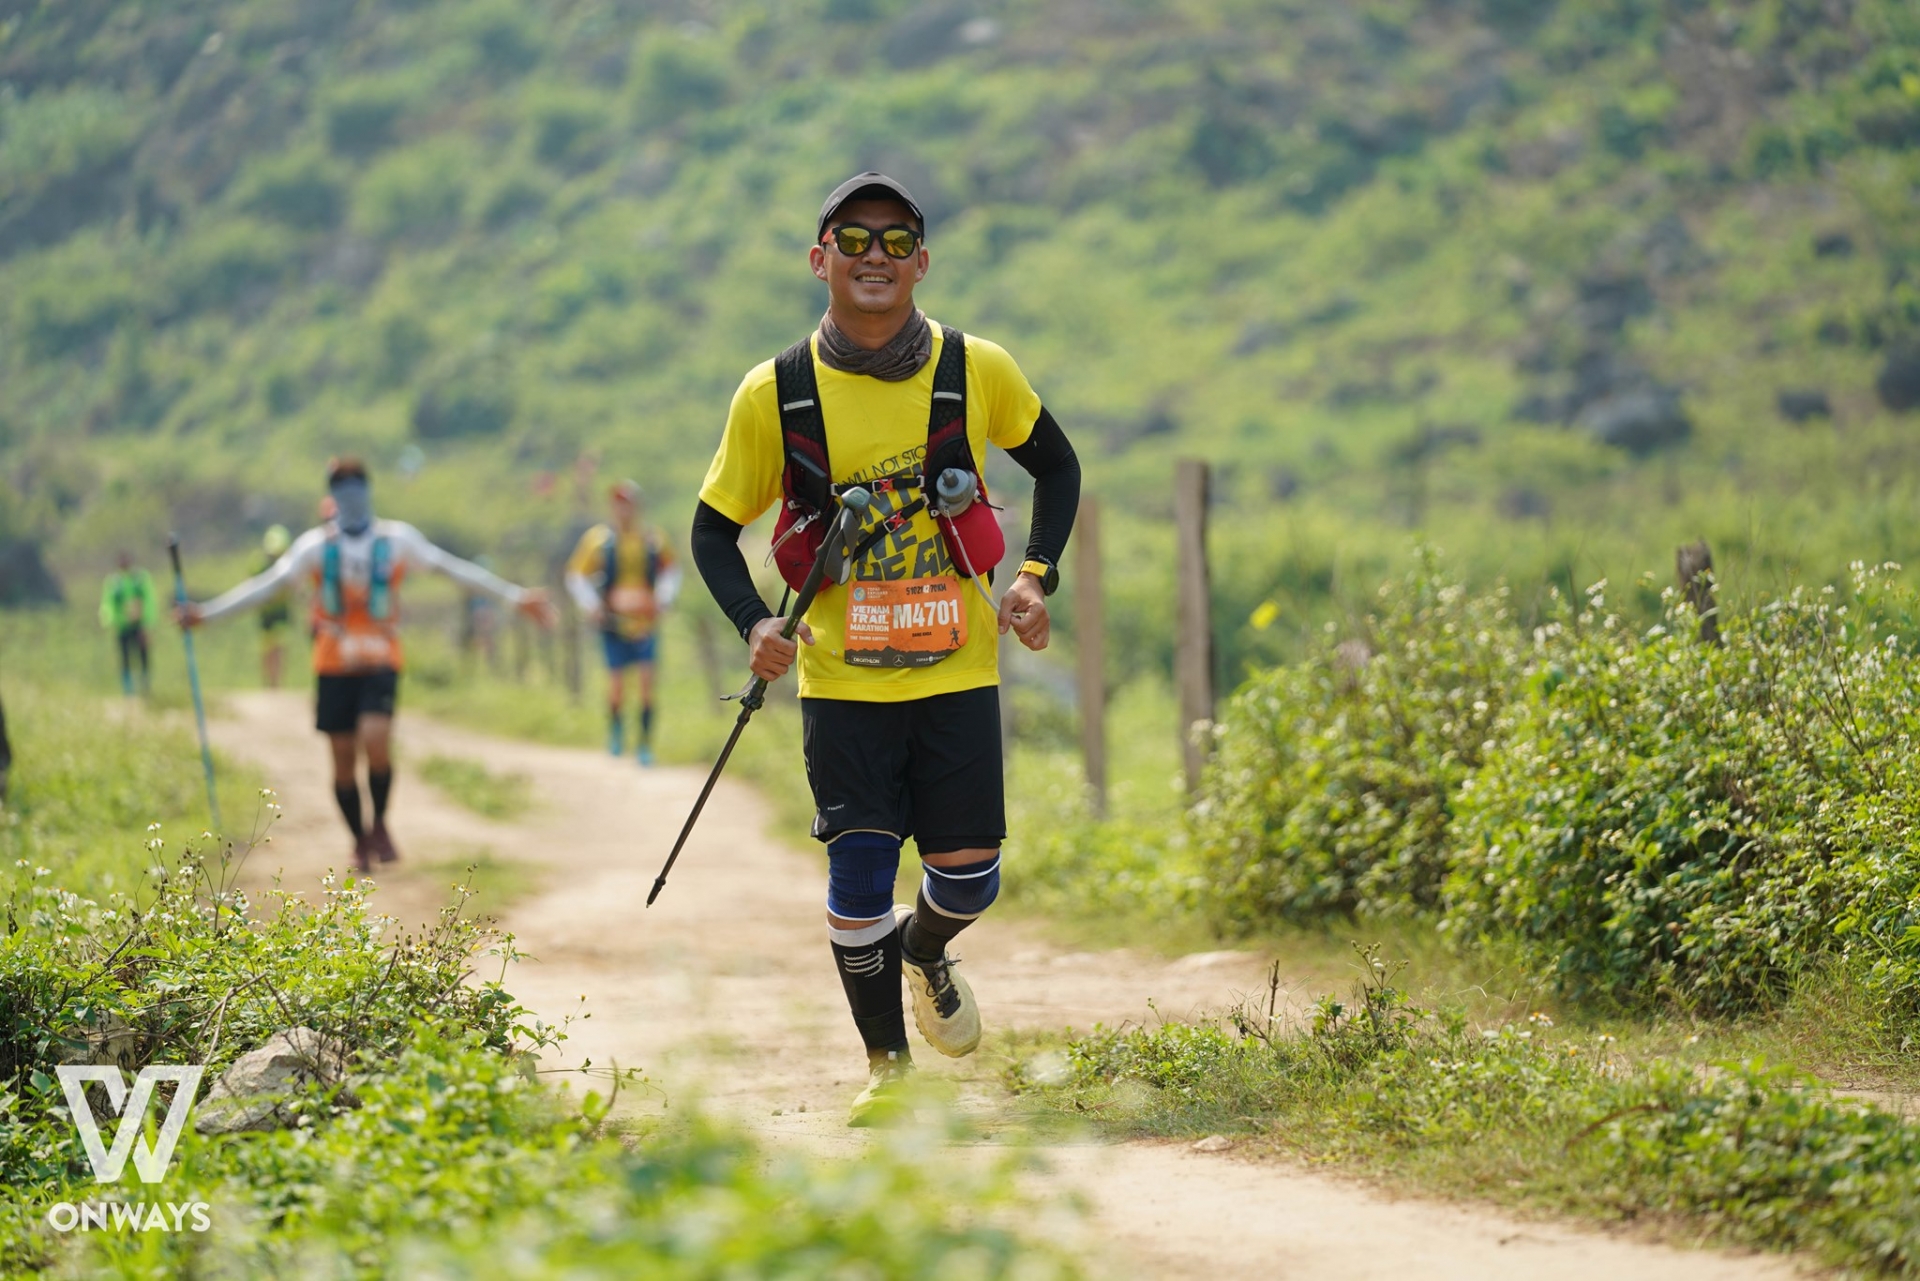 37 life-changing surgeries for 37 children thanks to Vietnam Trail Marathon 2021